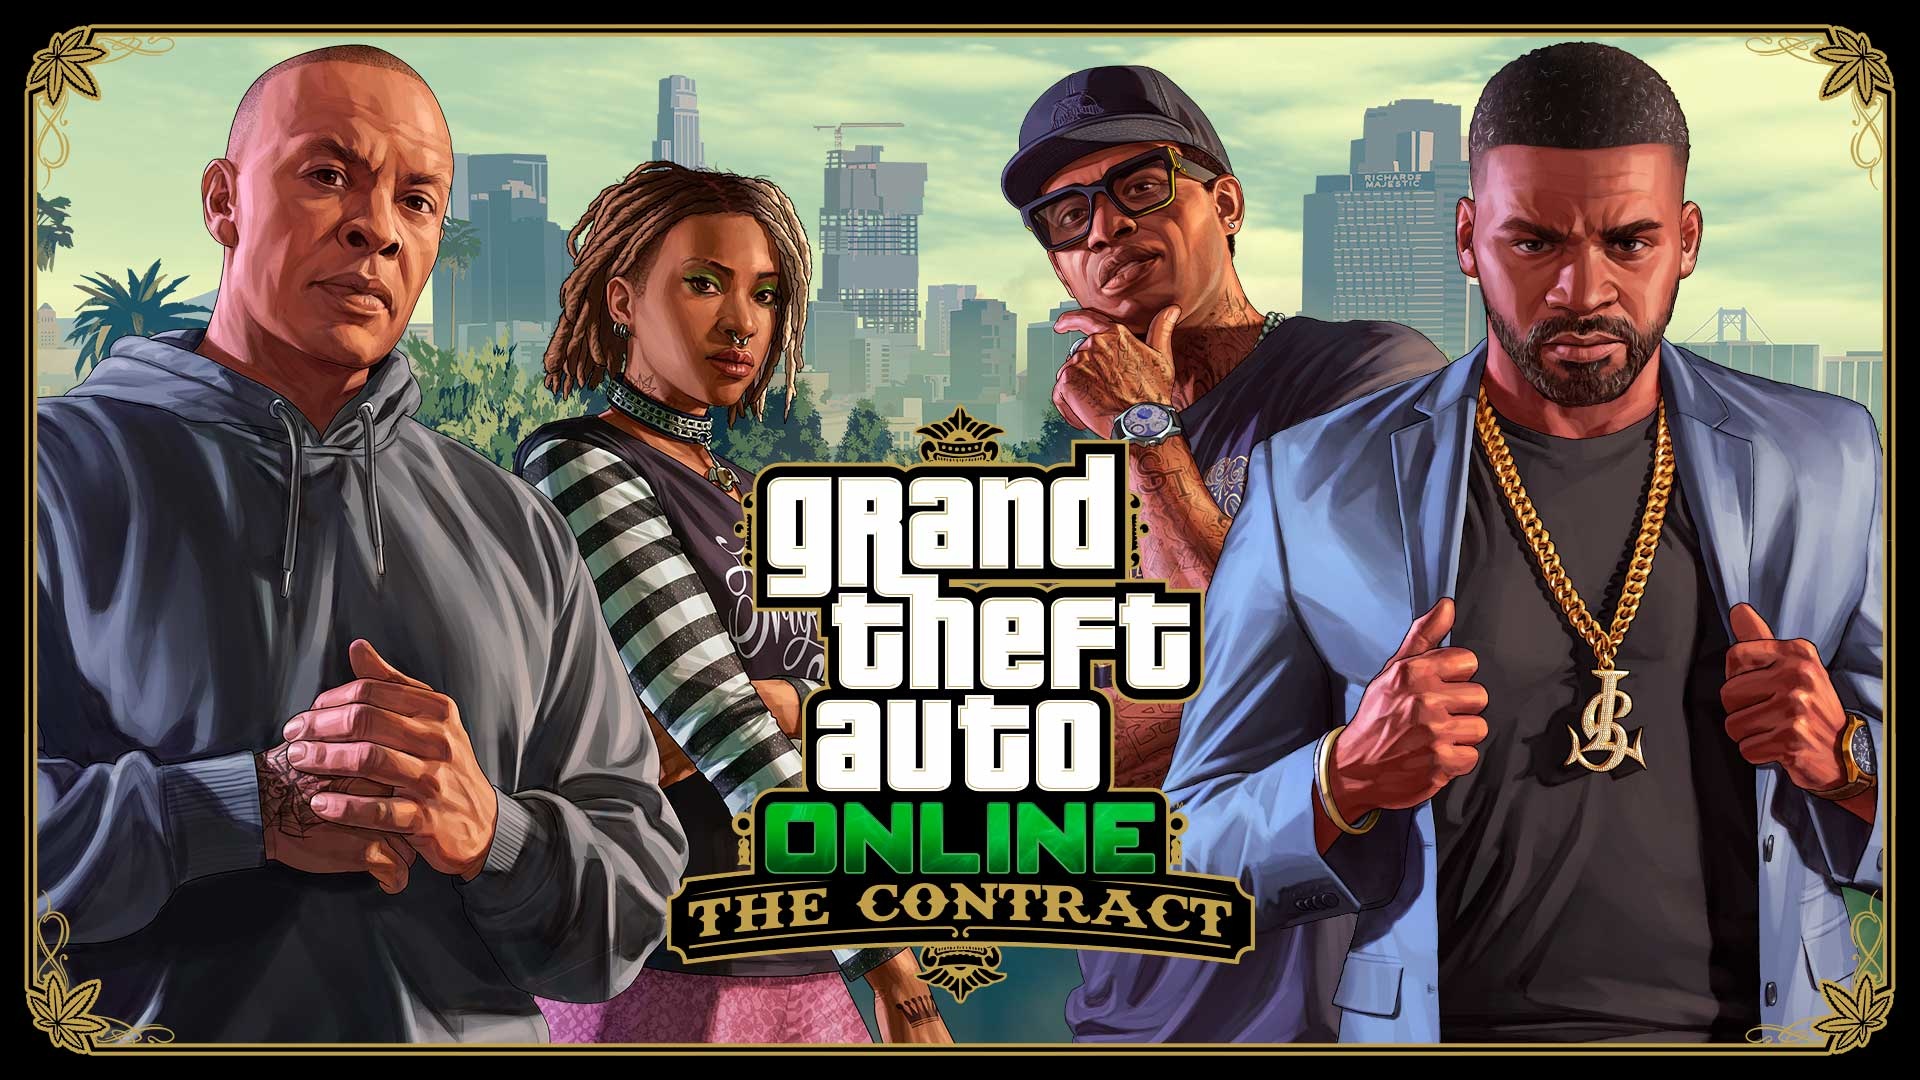 (W The Contract Update dla GTA Online, Dr. Dre odgrywał główną rolę. To, że 50 Cent jest zaangażowany w podobny projekt w Rockstar nie byłoby aż tak nieprawdopodobne.)